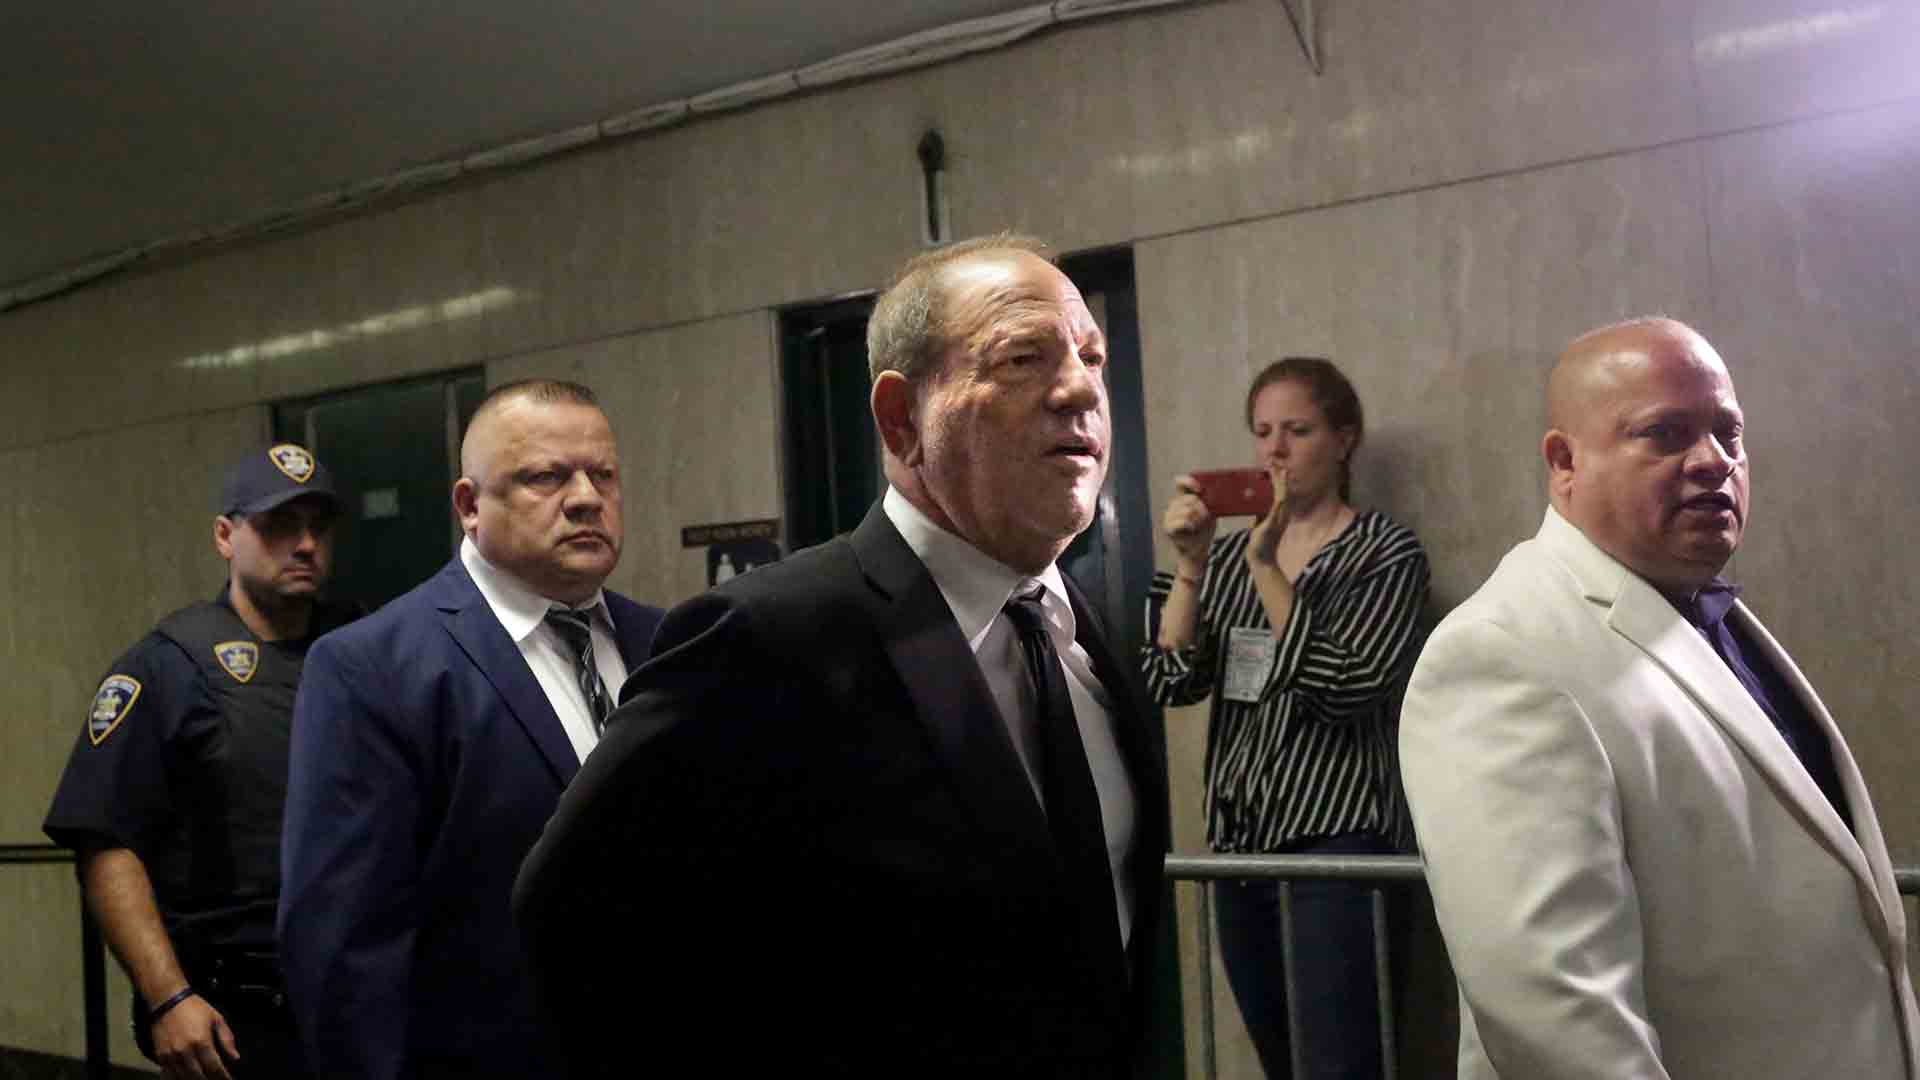 El juicio de Weinstein queda aplazado hasta enero por nuevas acusaciones de abuso sexual